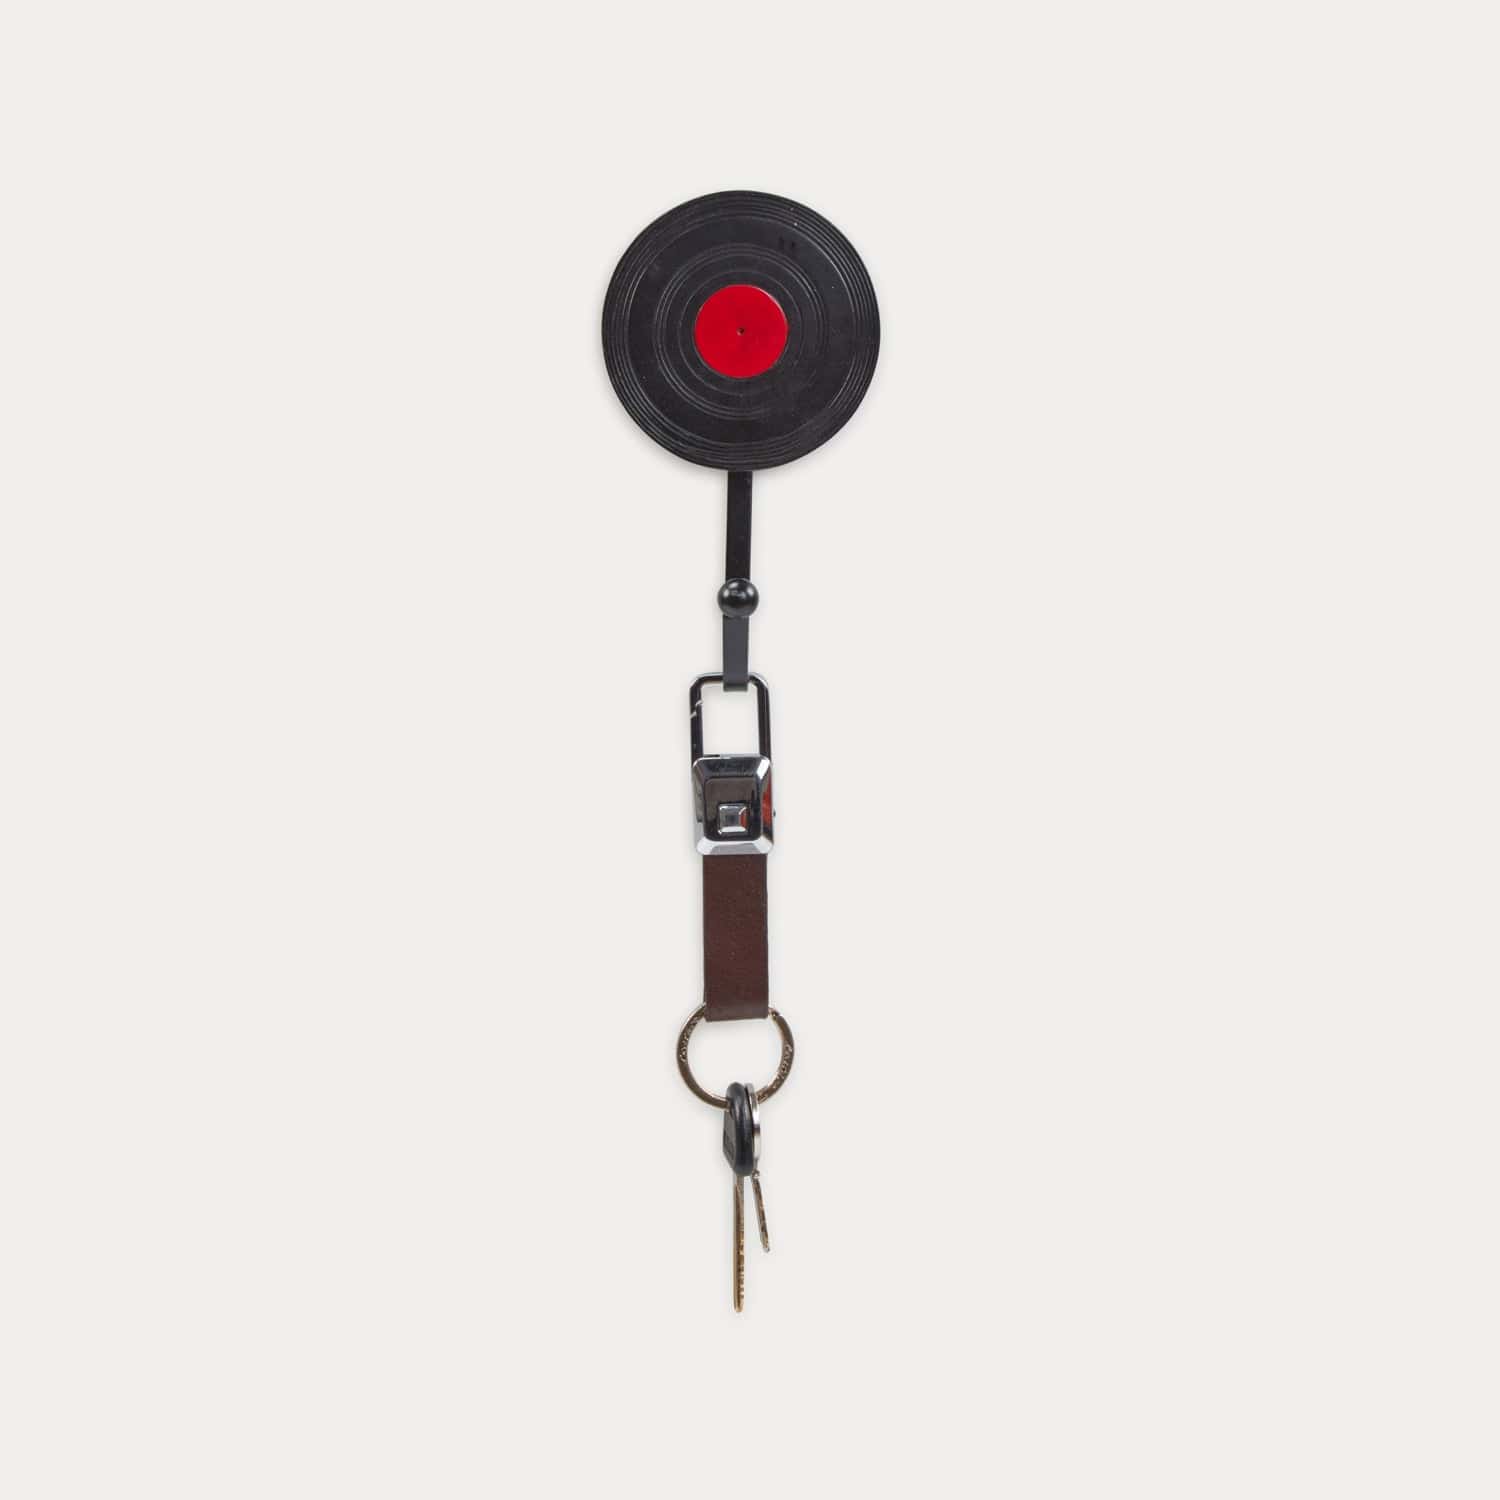 Red Butler Key Holder Key Holder - Old Storage KKH06A1 Retro Key Holder Set – Vintage Charm for Secure Key Storage Redbutler